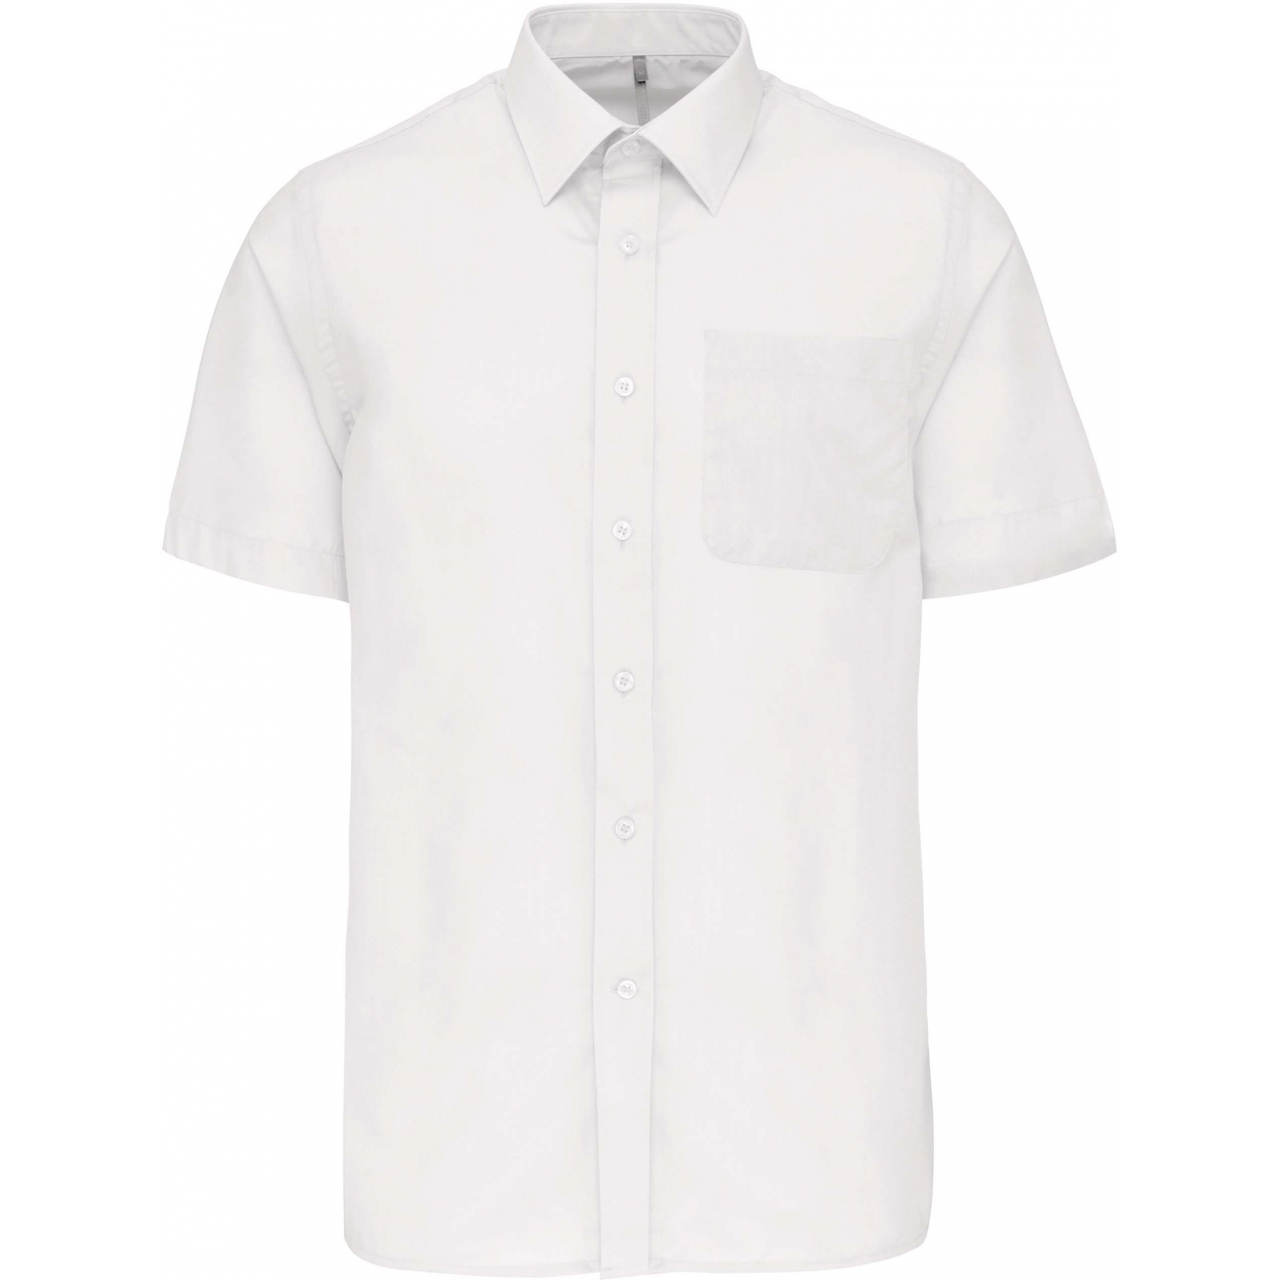 Pánská košile s krátkým rukávem Kariban ACE - bílá, 3XL